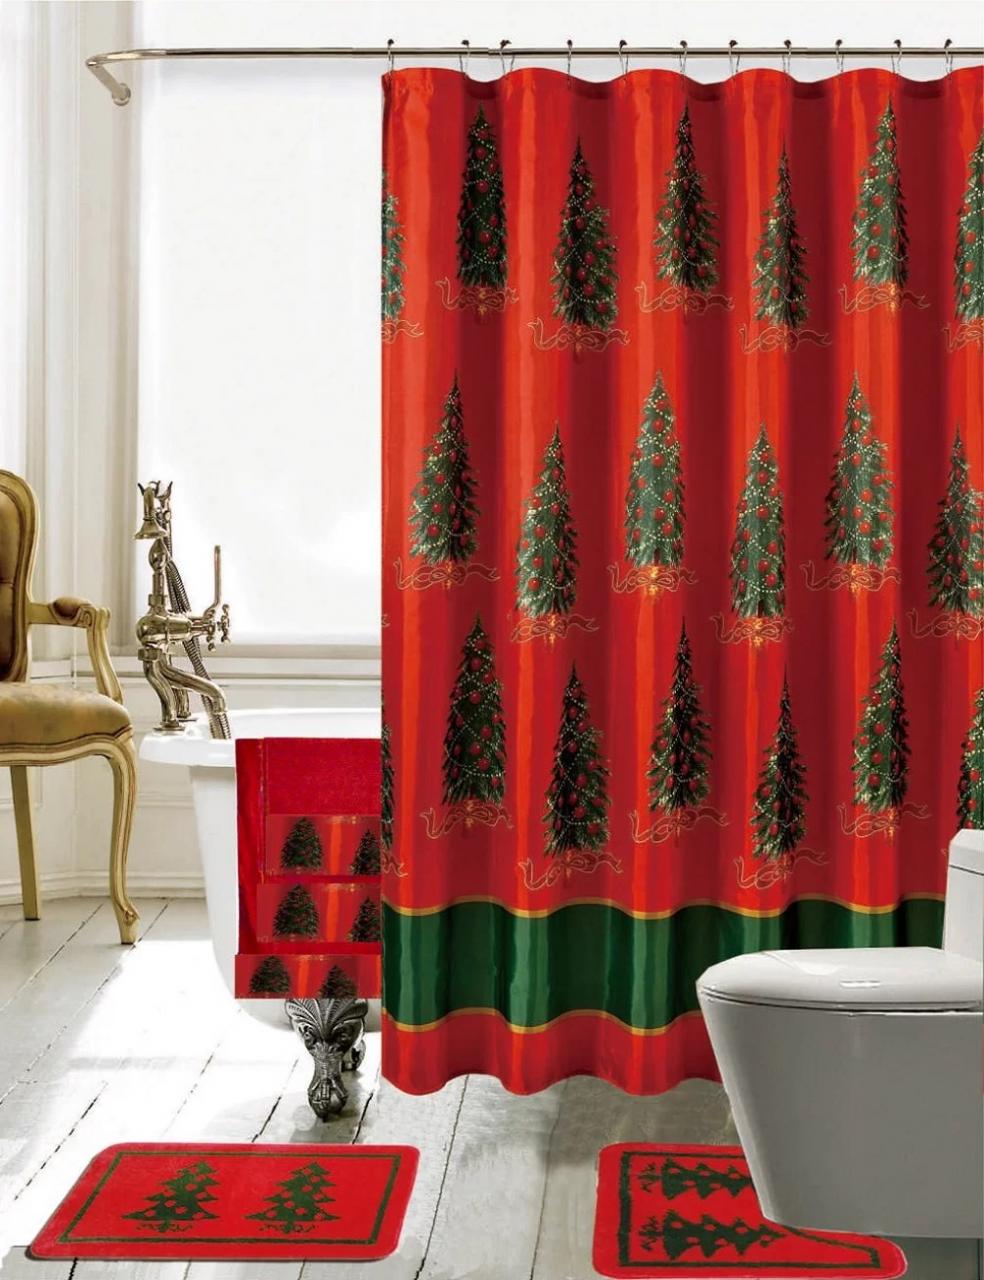 Daniels Bath Christmas Bathroom Decor 18 Piece Shower Curtain Set eBay